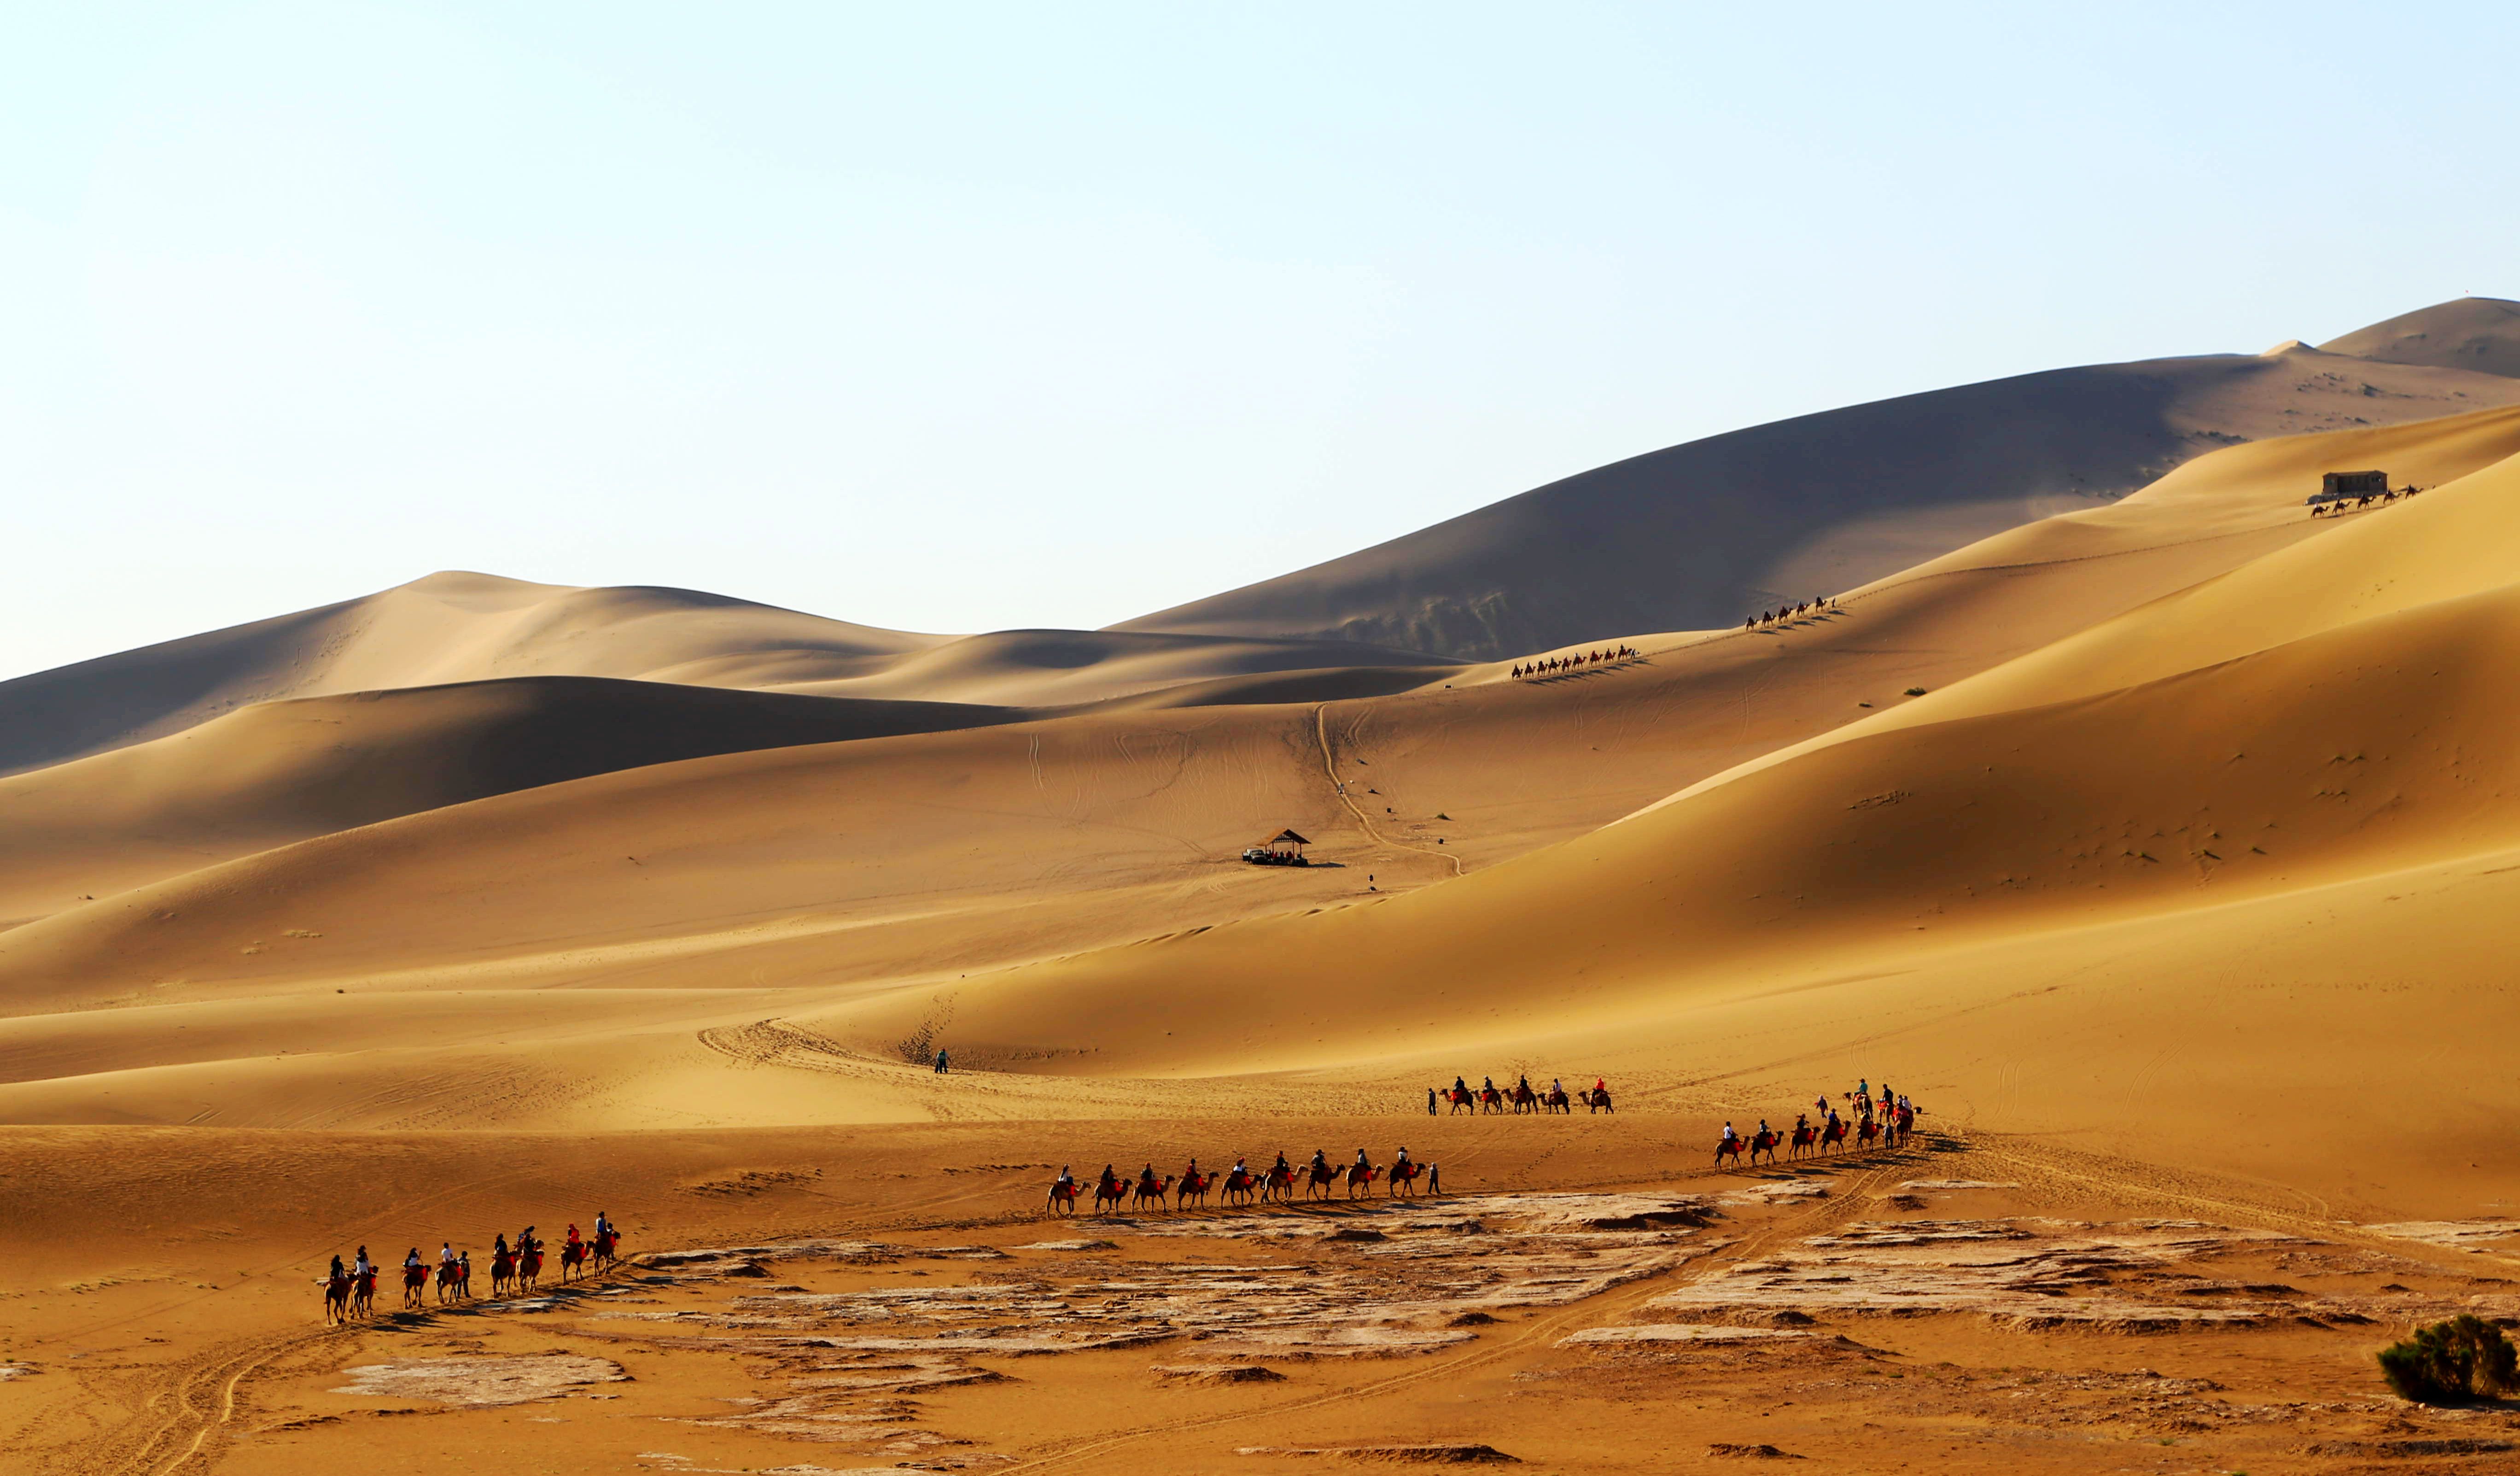 敦煌沙漠 - 敦煌景点 - 华侨城旅游网